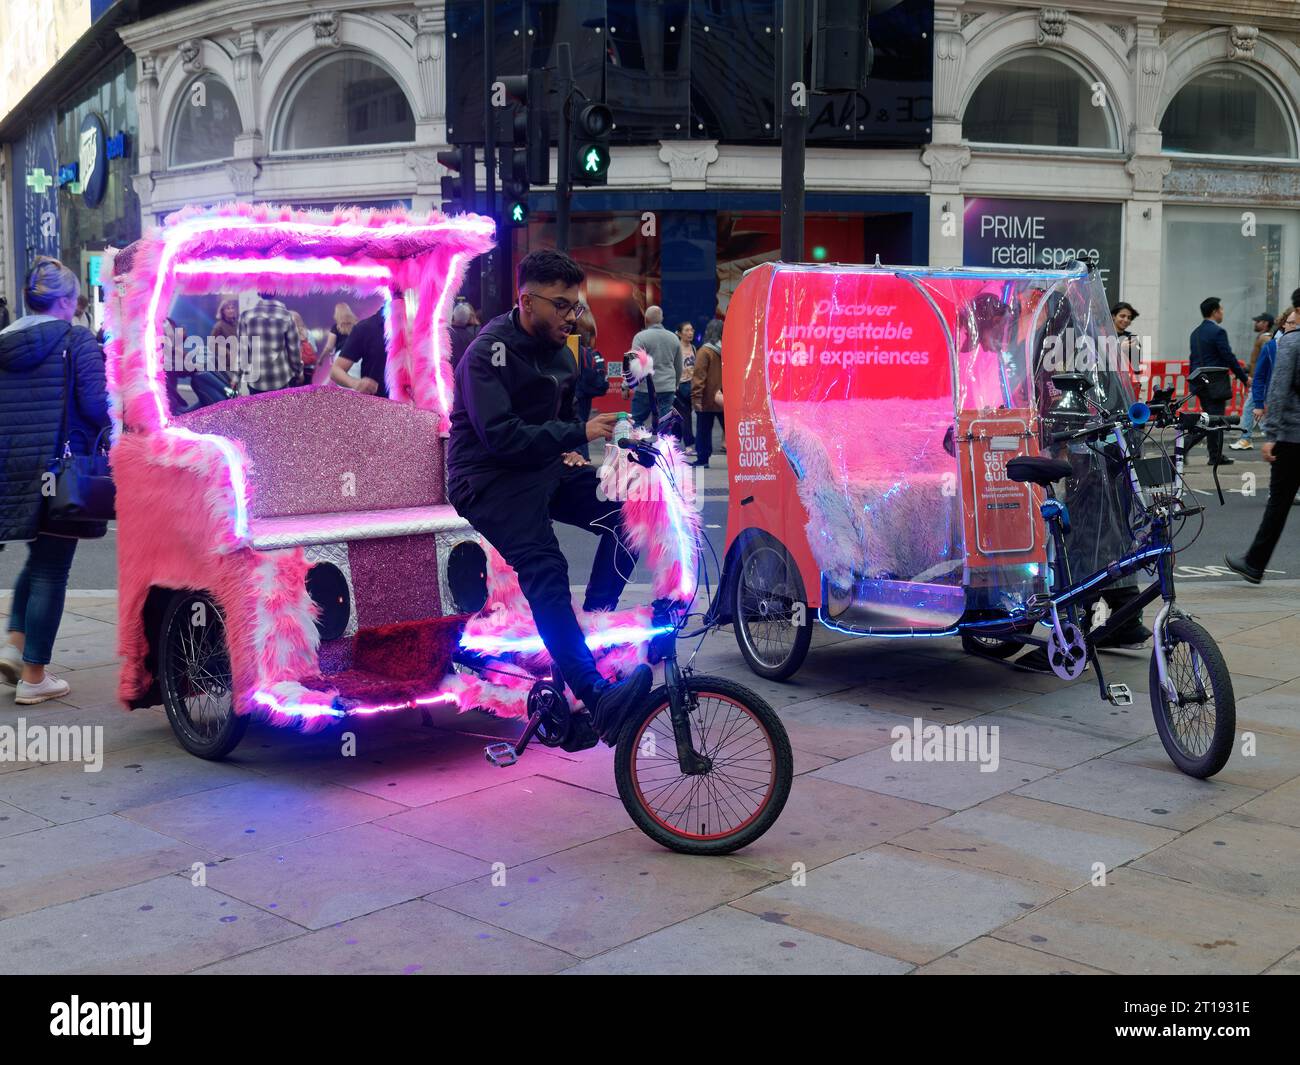 Deux tricycles de taxi tricycles rose moelleux décorés avec goût, attendant les passagers touristiques à Londres Banque D'Images